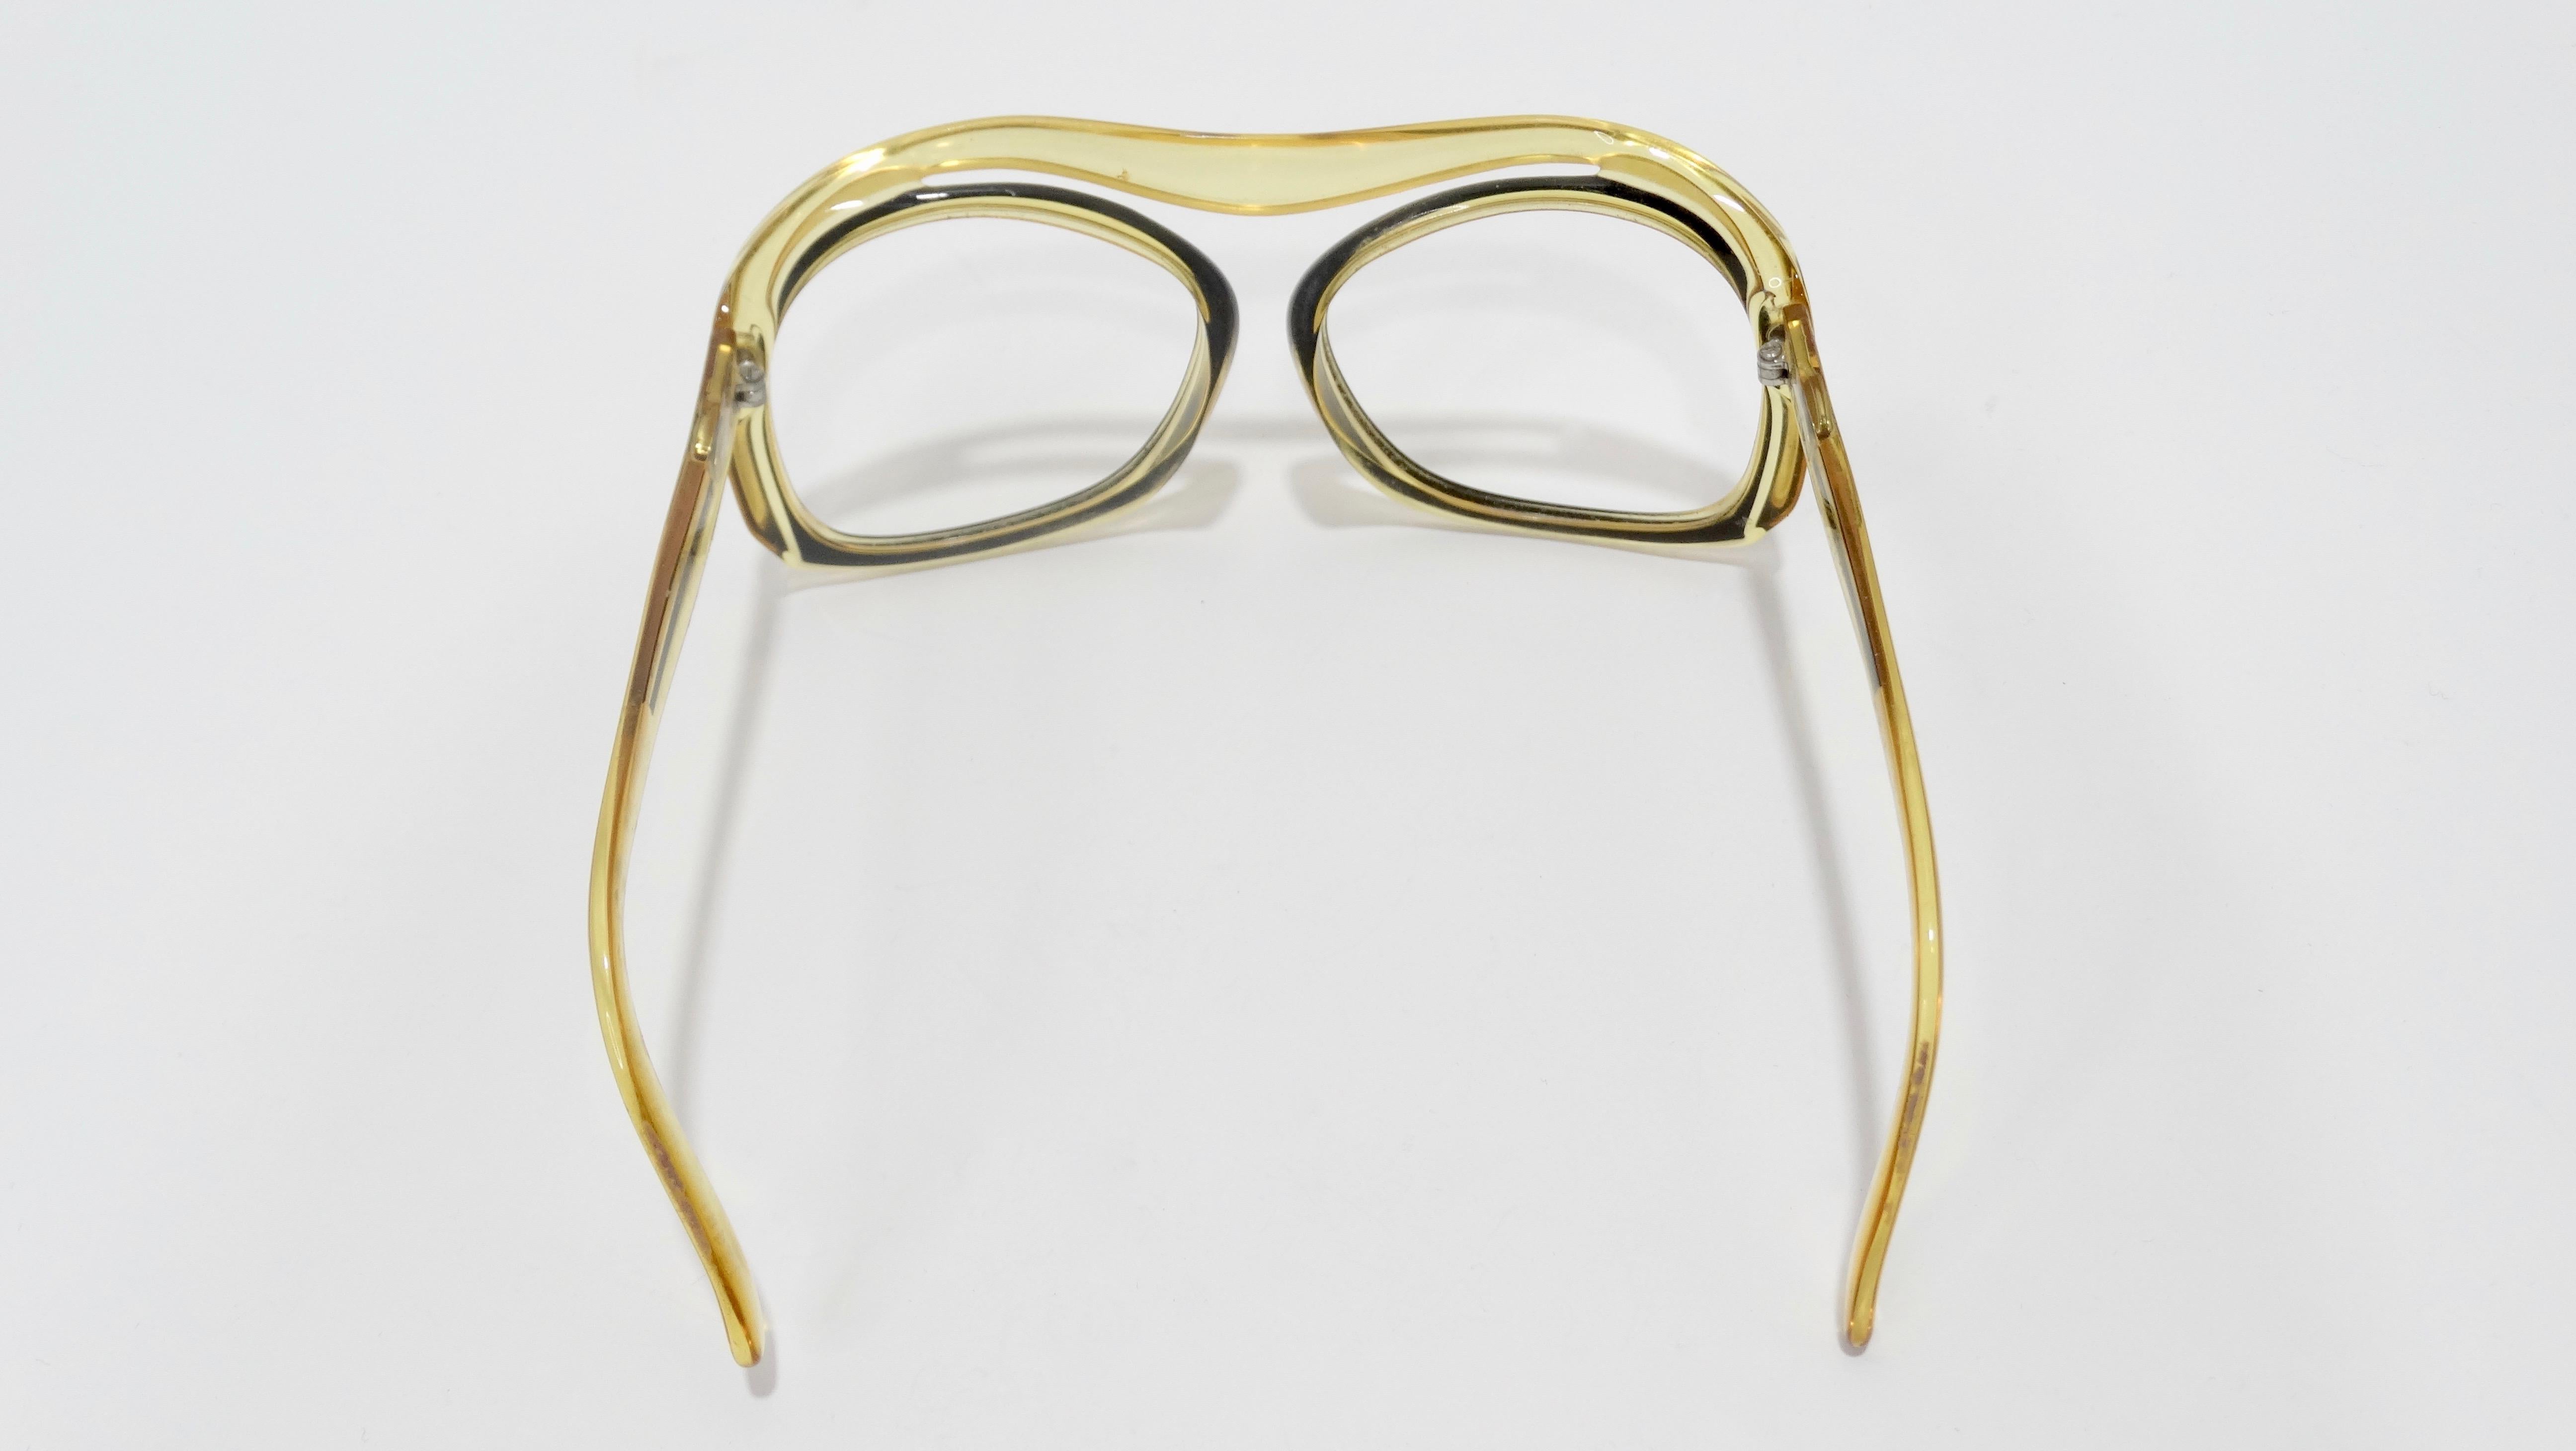 versace eyeglasses